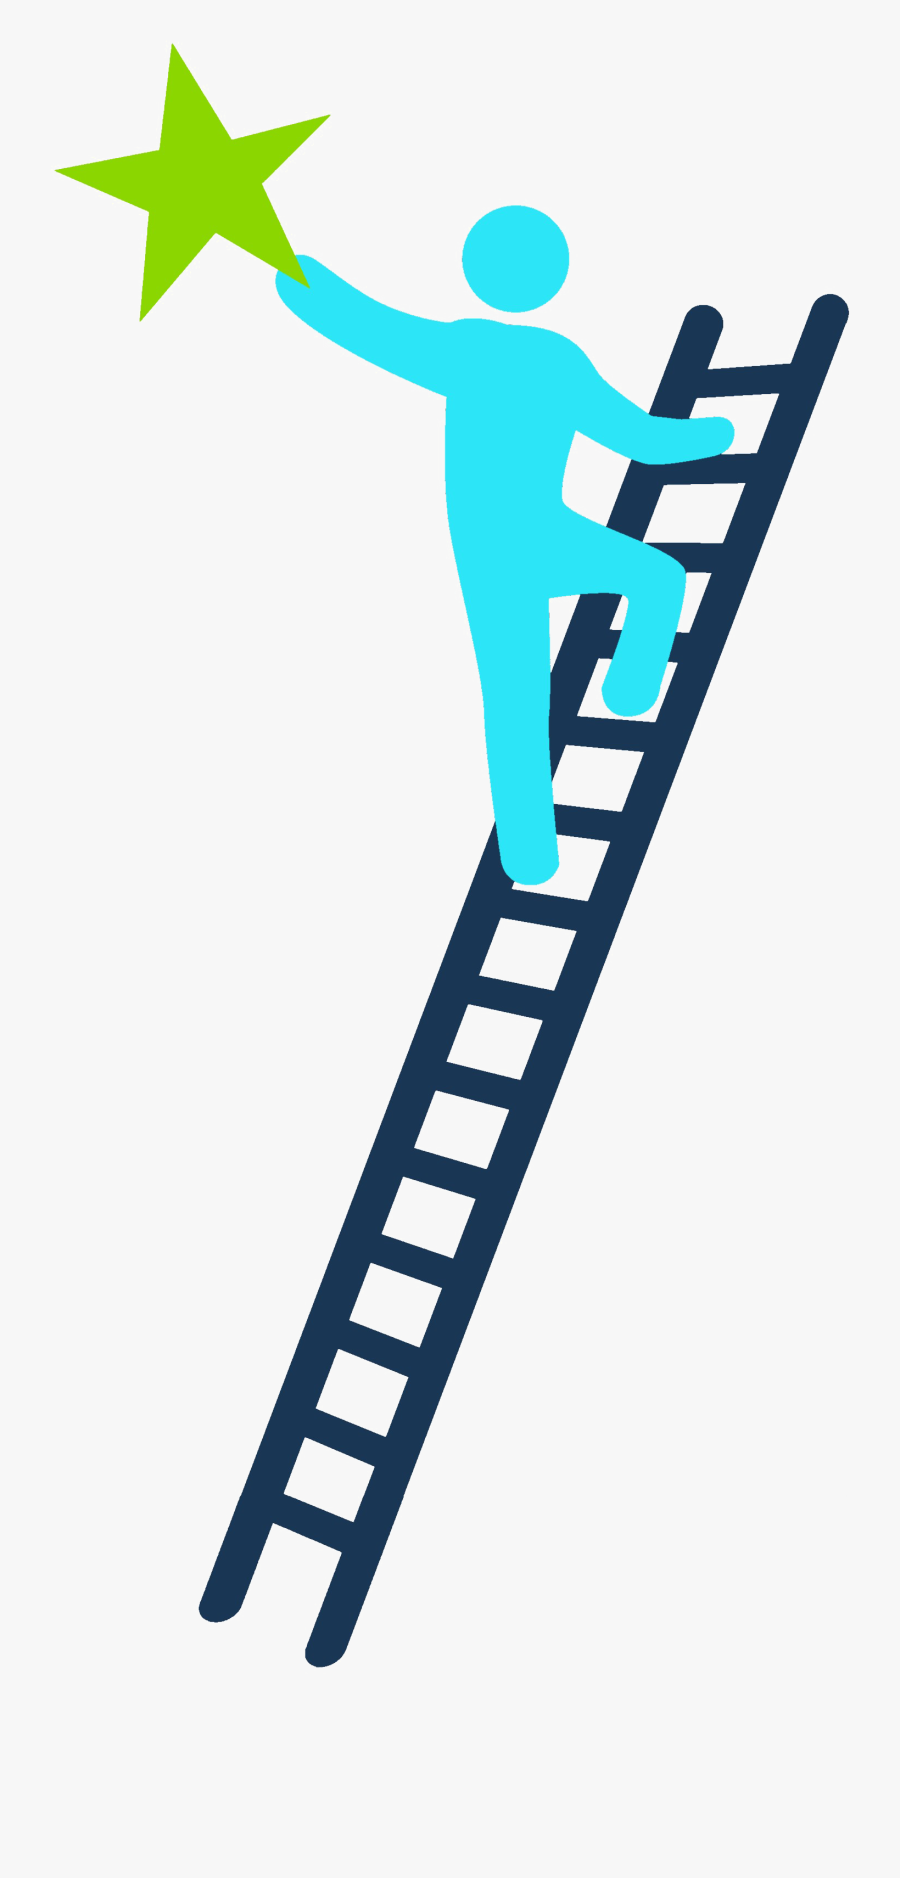 Ladder Of Success Png Transparent Image - Climbing The Ladder To Success Png, Transparent Clipart